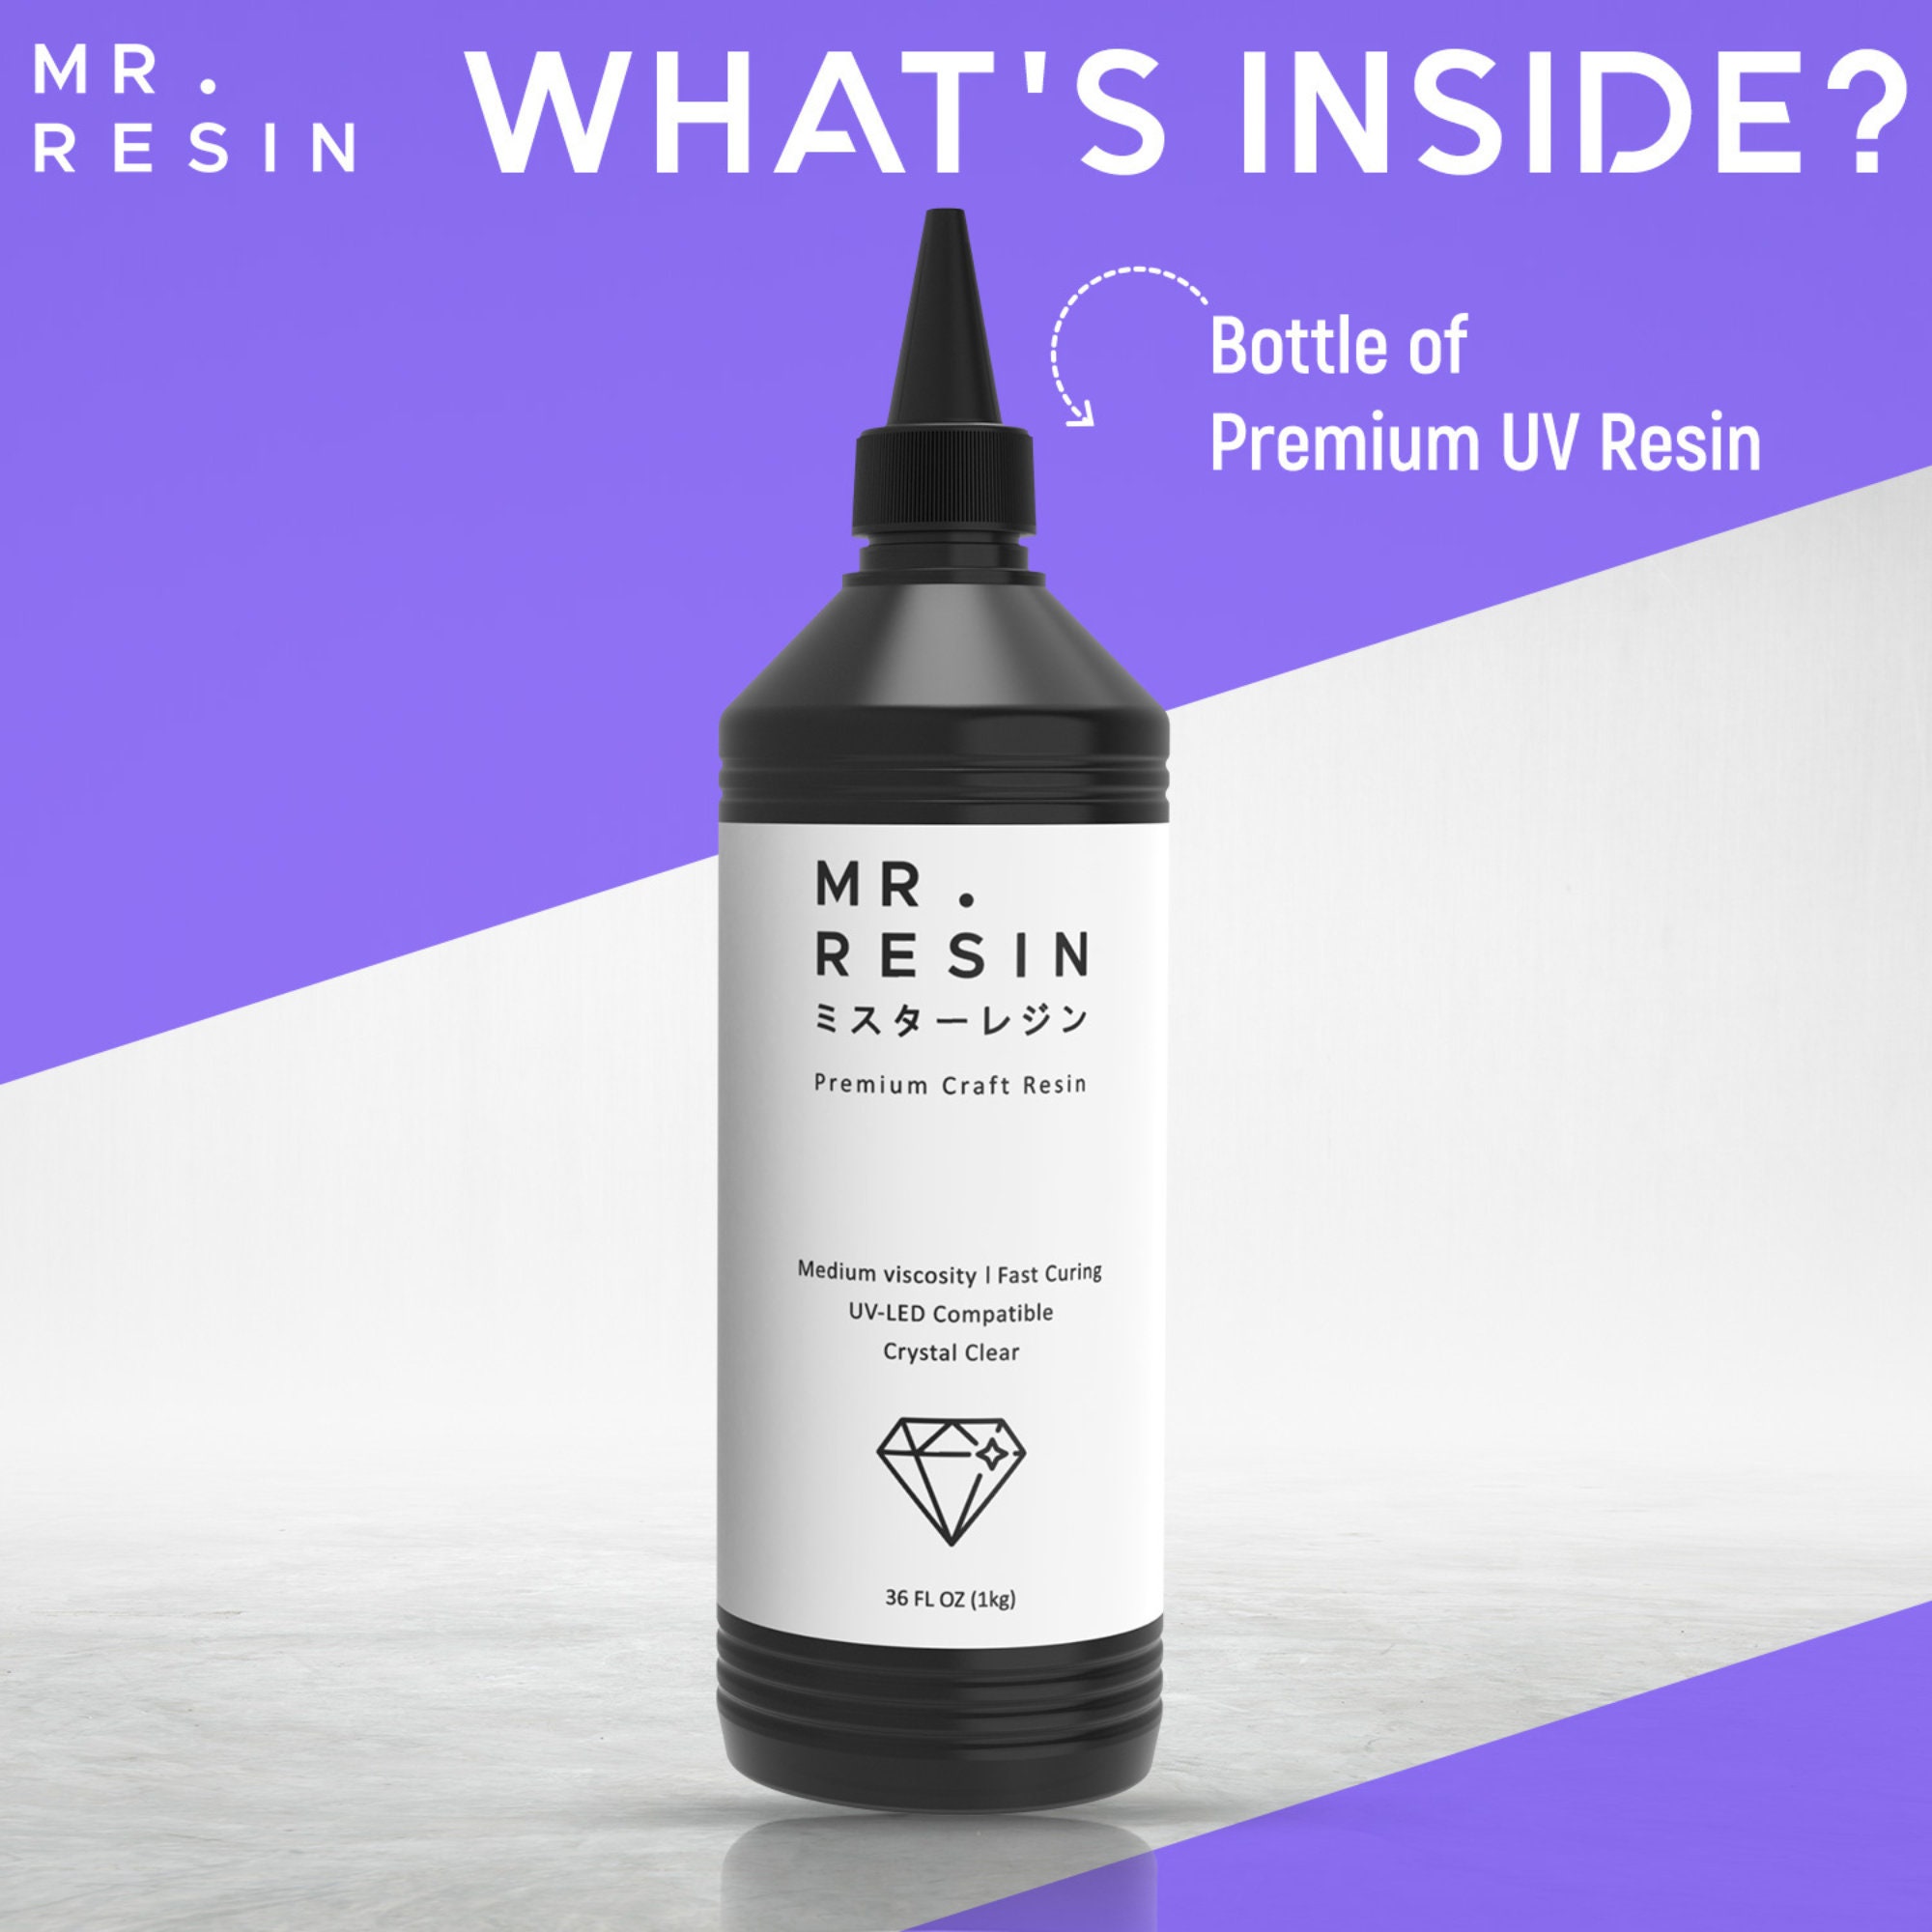 Mr.resin™ Original Craft UV Resin 17.6oz 500g Crystal Clear Hard